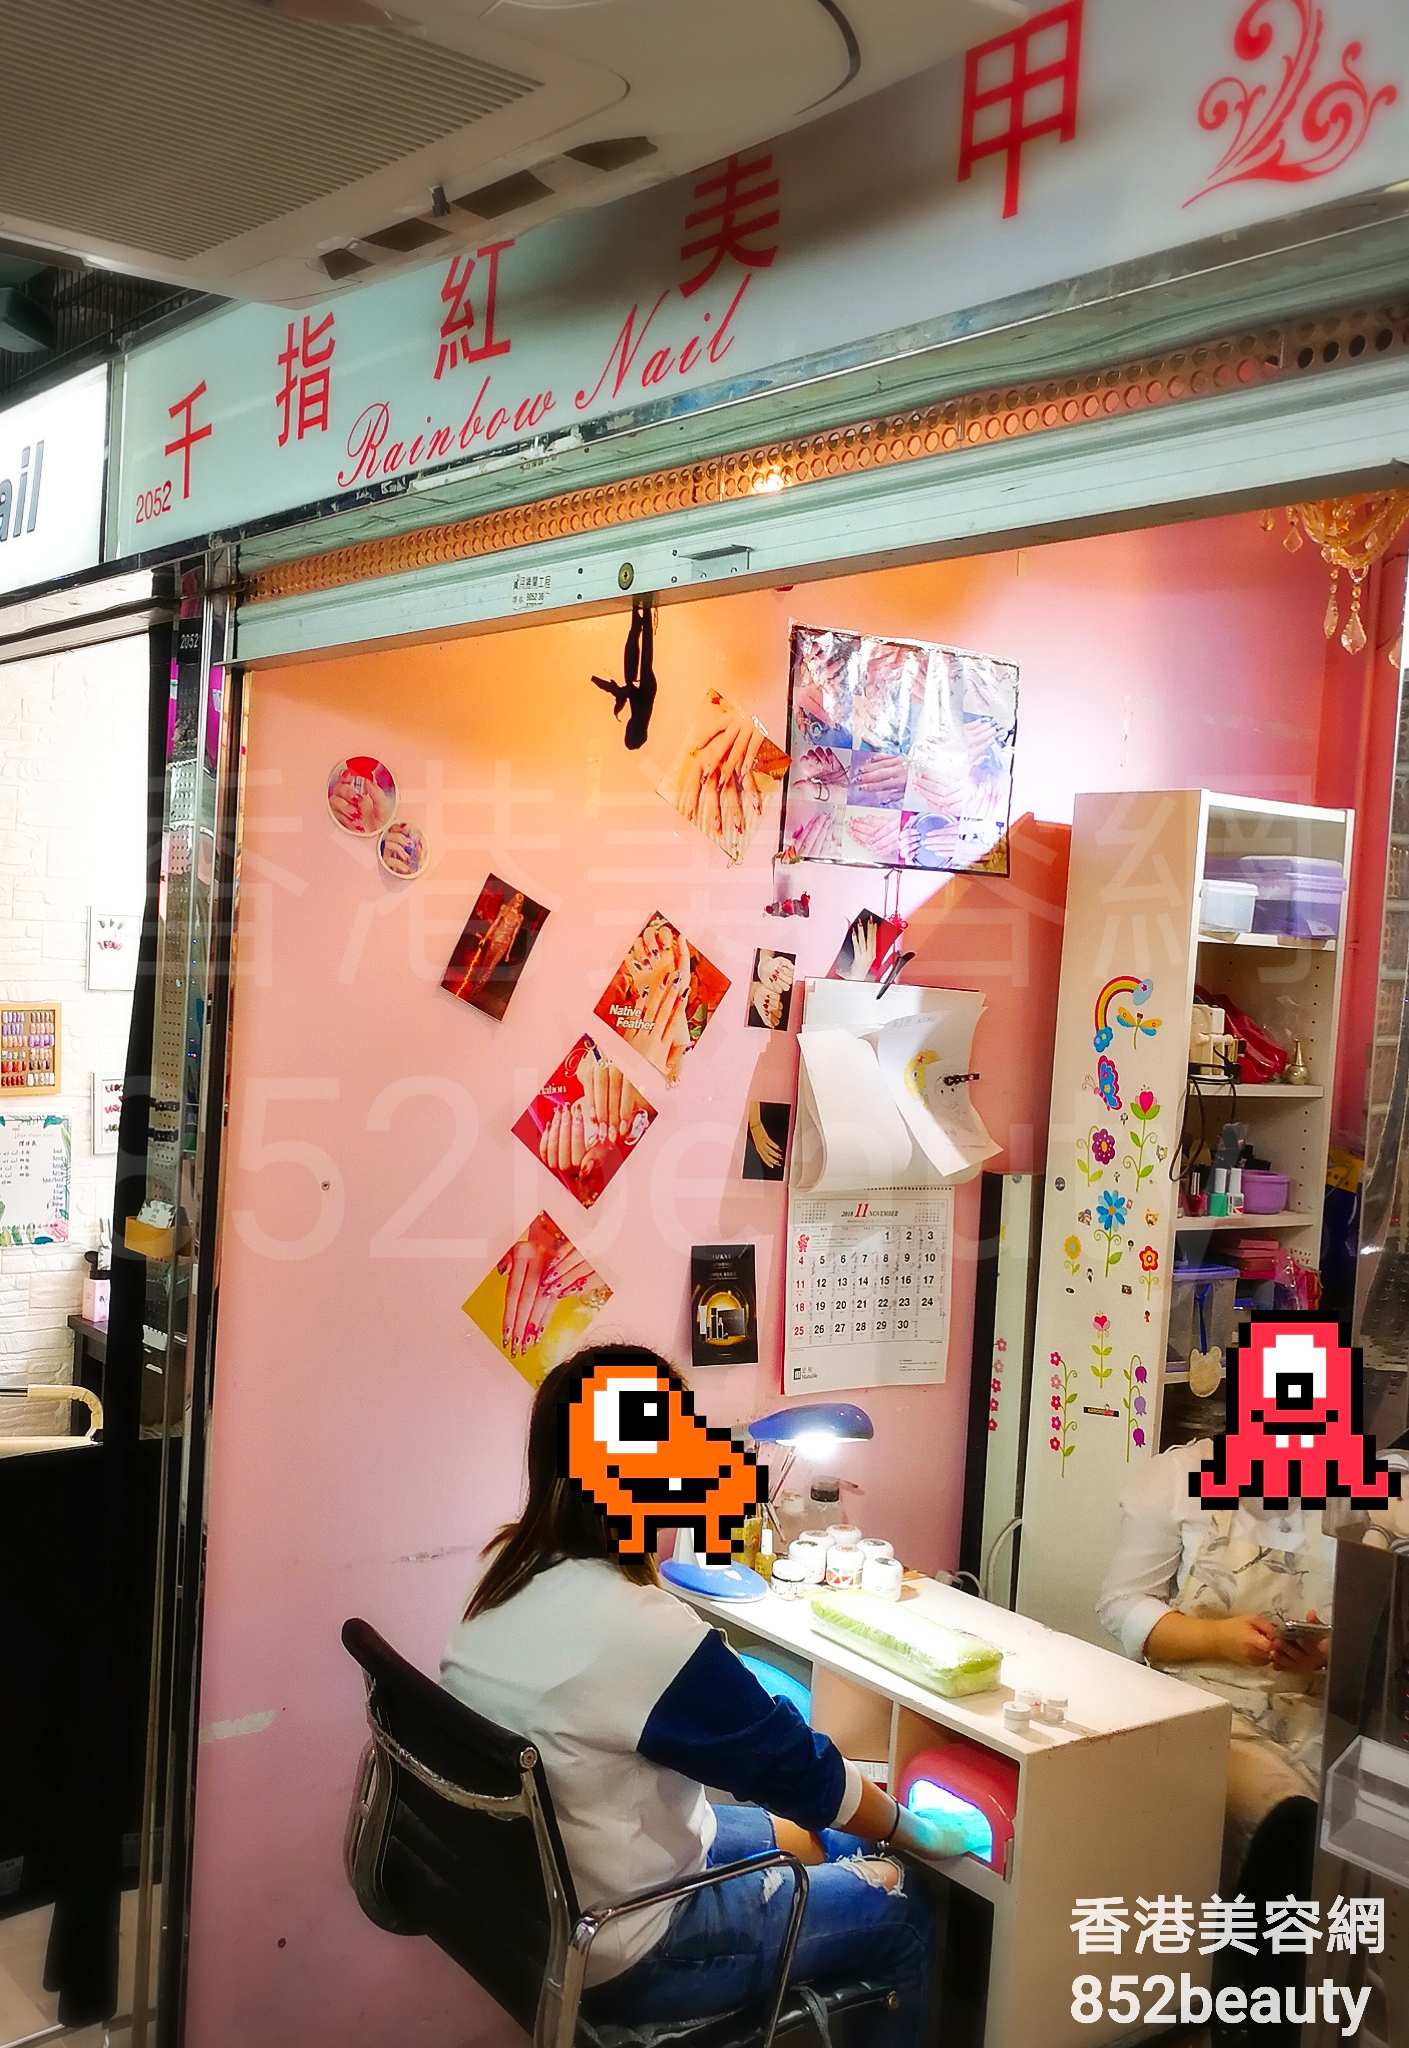 香港美容網 Hong Kong Beauty Salon 美容院 / 美容師: 千指紅美甲